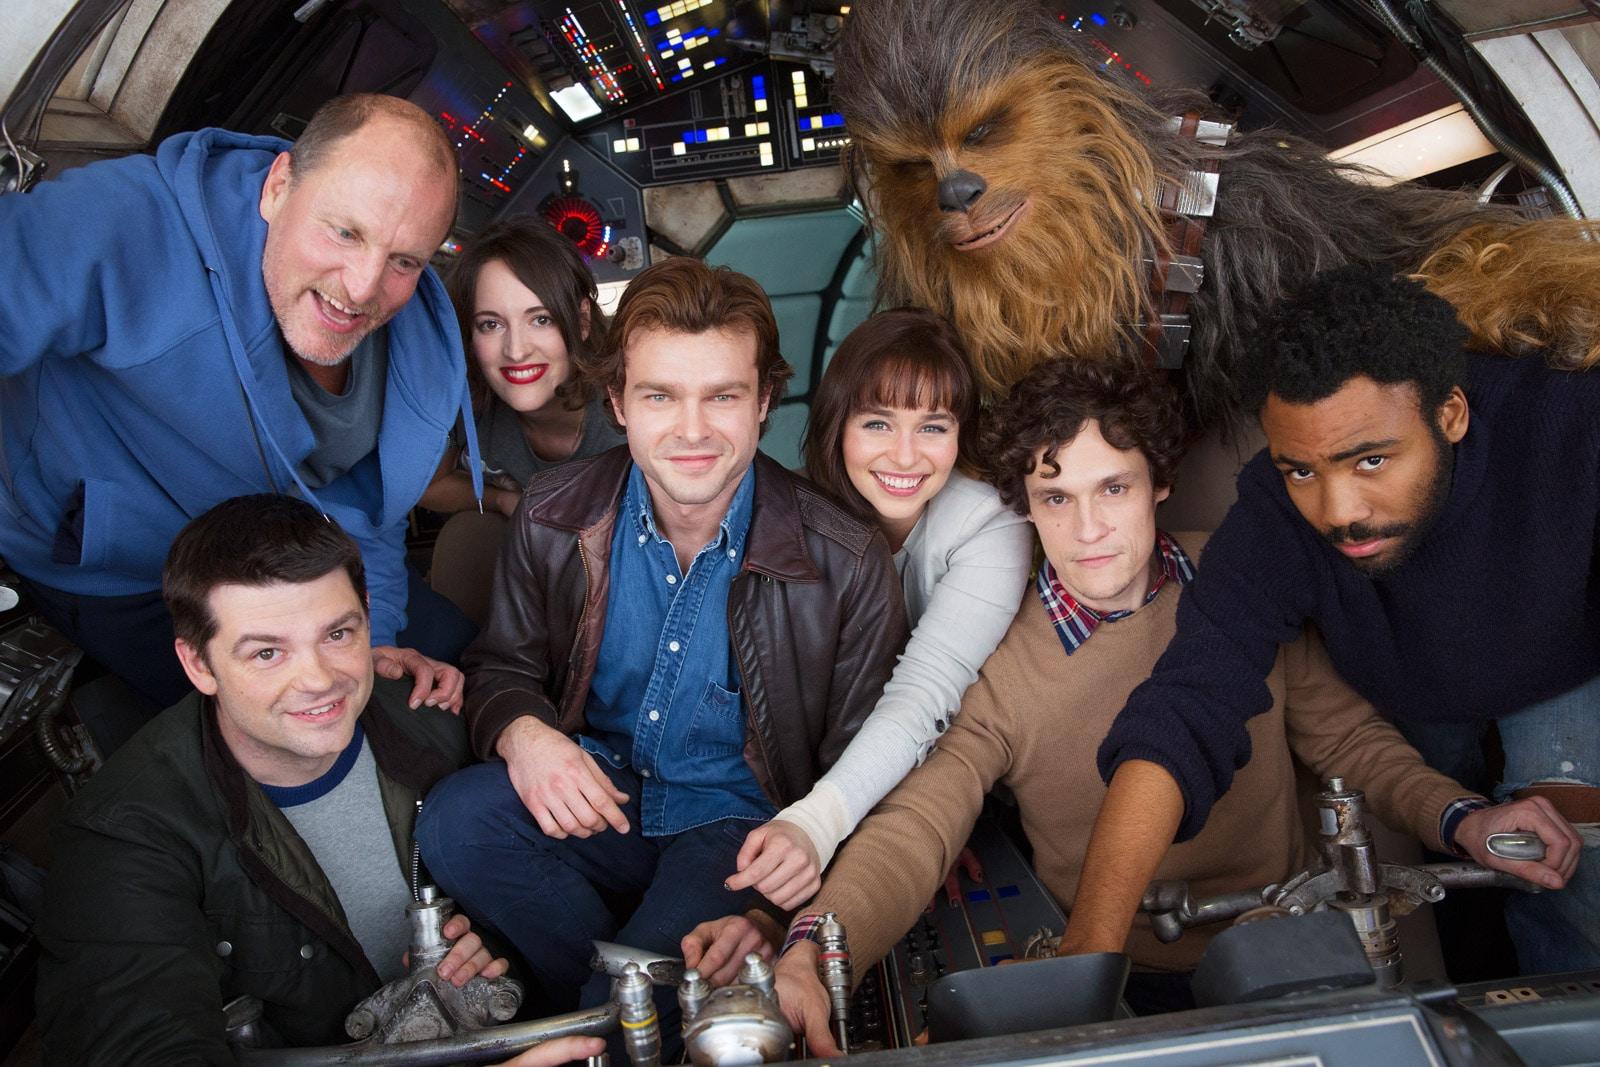 Solo - Uma História Star Wars | Ron Howard celebra o fim das filmagens